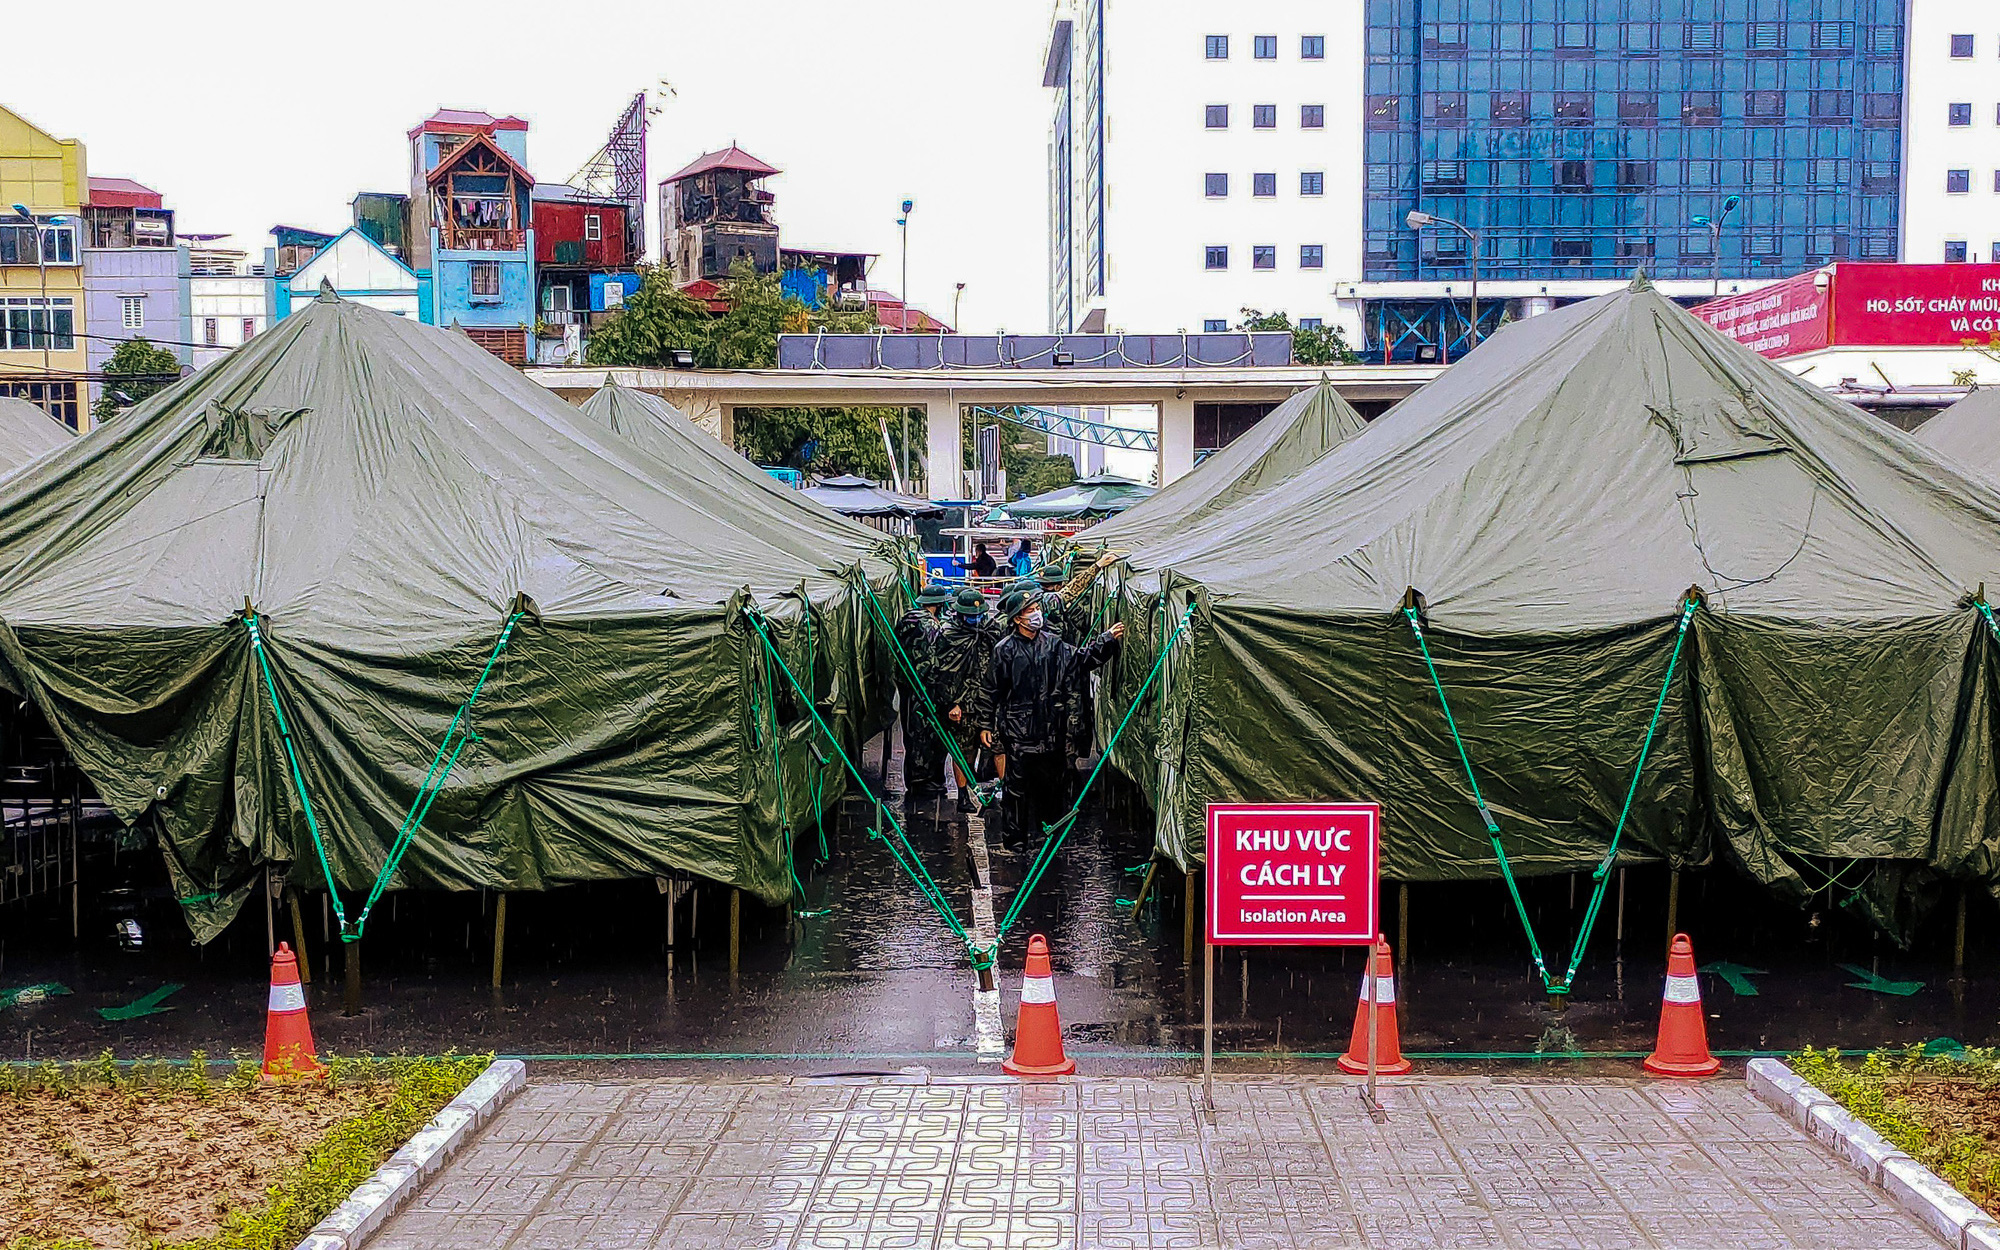 Hình ảnh bệnh viện dã chiến xây dựng chưa đầy 300 phút đã hoàn thành tại bệnh viện Bạch Mai